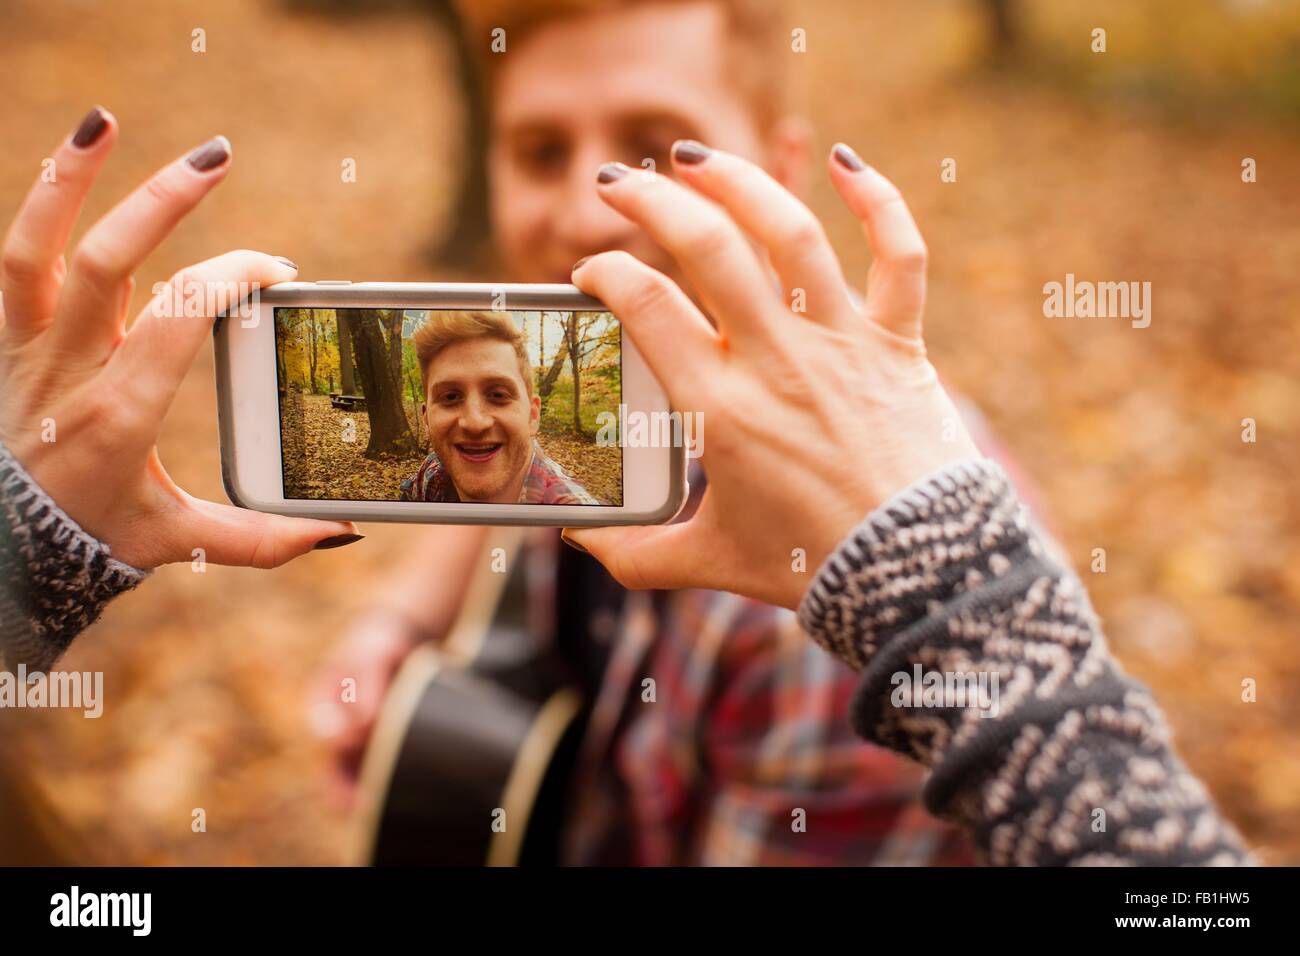 Hände der jungen Frau fotografieren Freund auf Smartphone im herbstlichen Wald Stockfoto